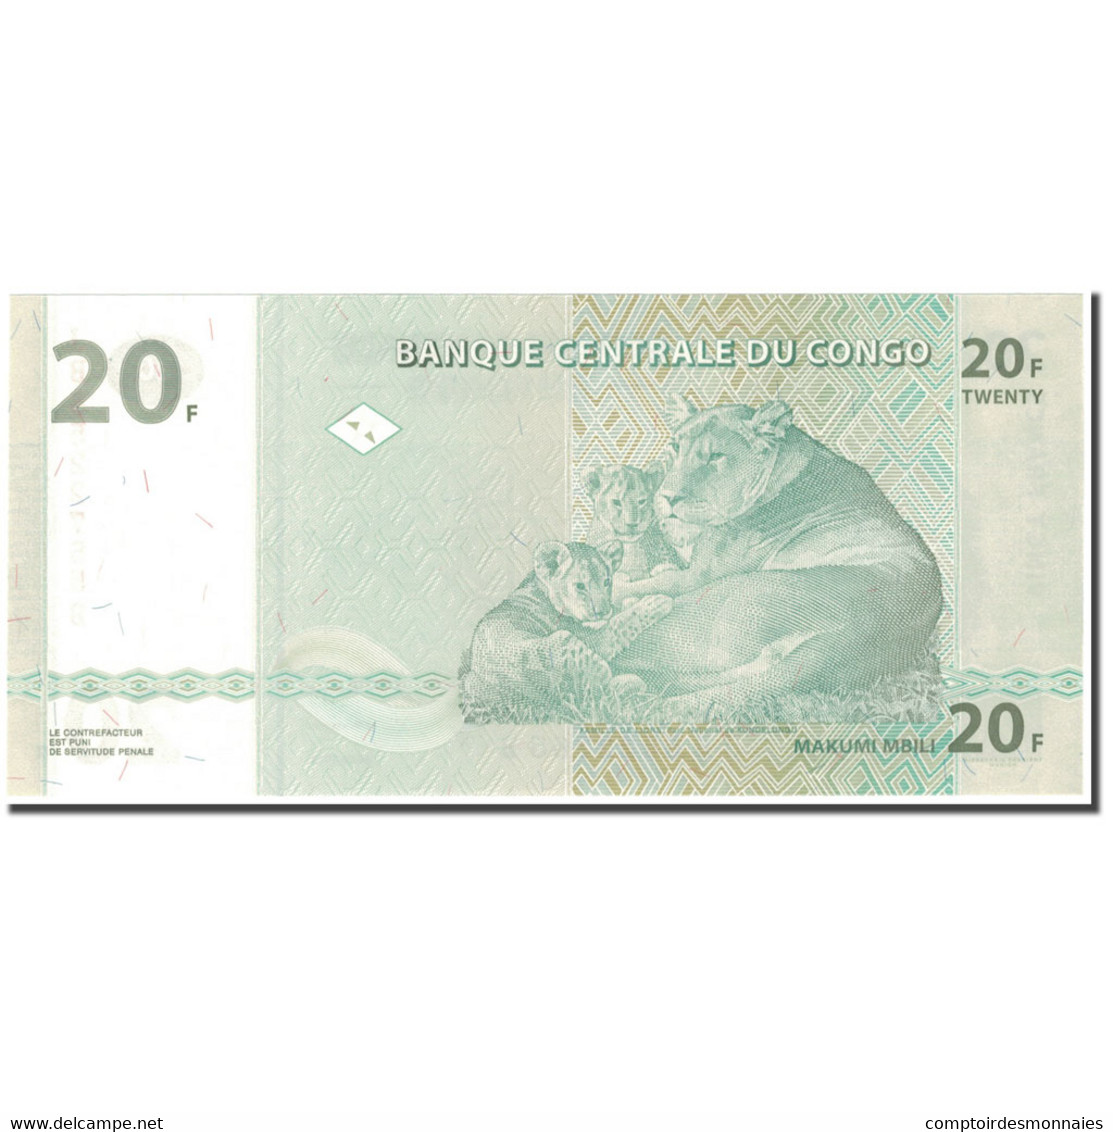 Billet, Congo Democratic Republic, 20 Francs, 2003-06-30, KM:94a, NEUF - Democratic Republic Of The Congo & Zaire